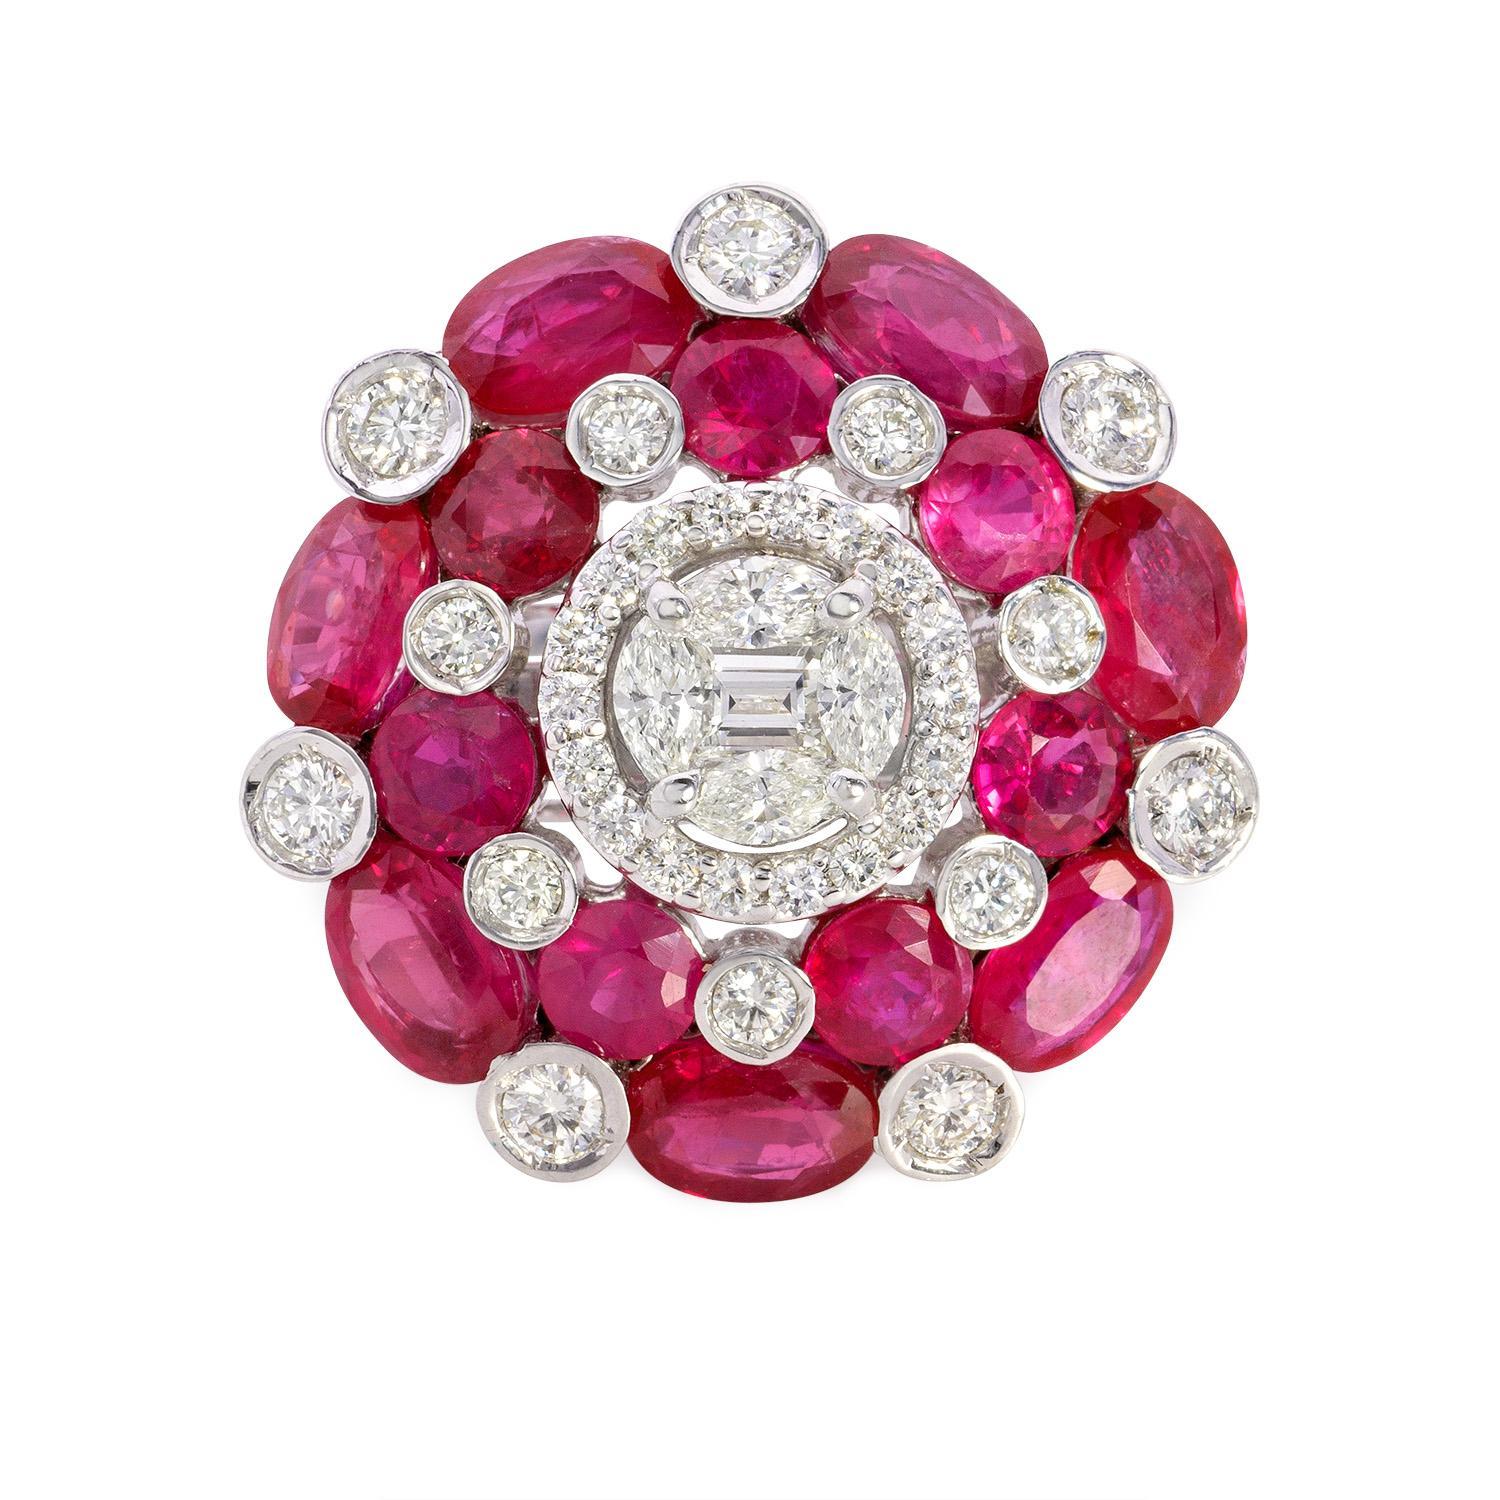 Wir stellen Ihnen unsere bezaubernden Ziya Small Earrings vor, ein bezauberndes Paar, das die zeitlose Schönheit runder Diamanten und die reiche Anziehungskraft von Rubinen vereint. Diese Ohrringe bestehen aus insgesamt 0,45 Karat runden Diamanten